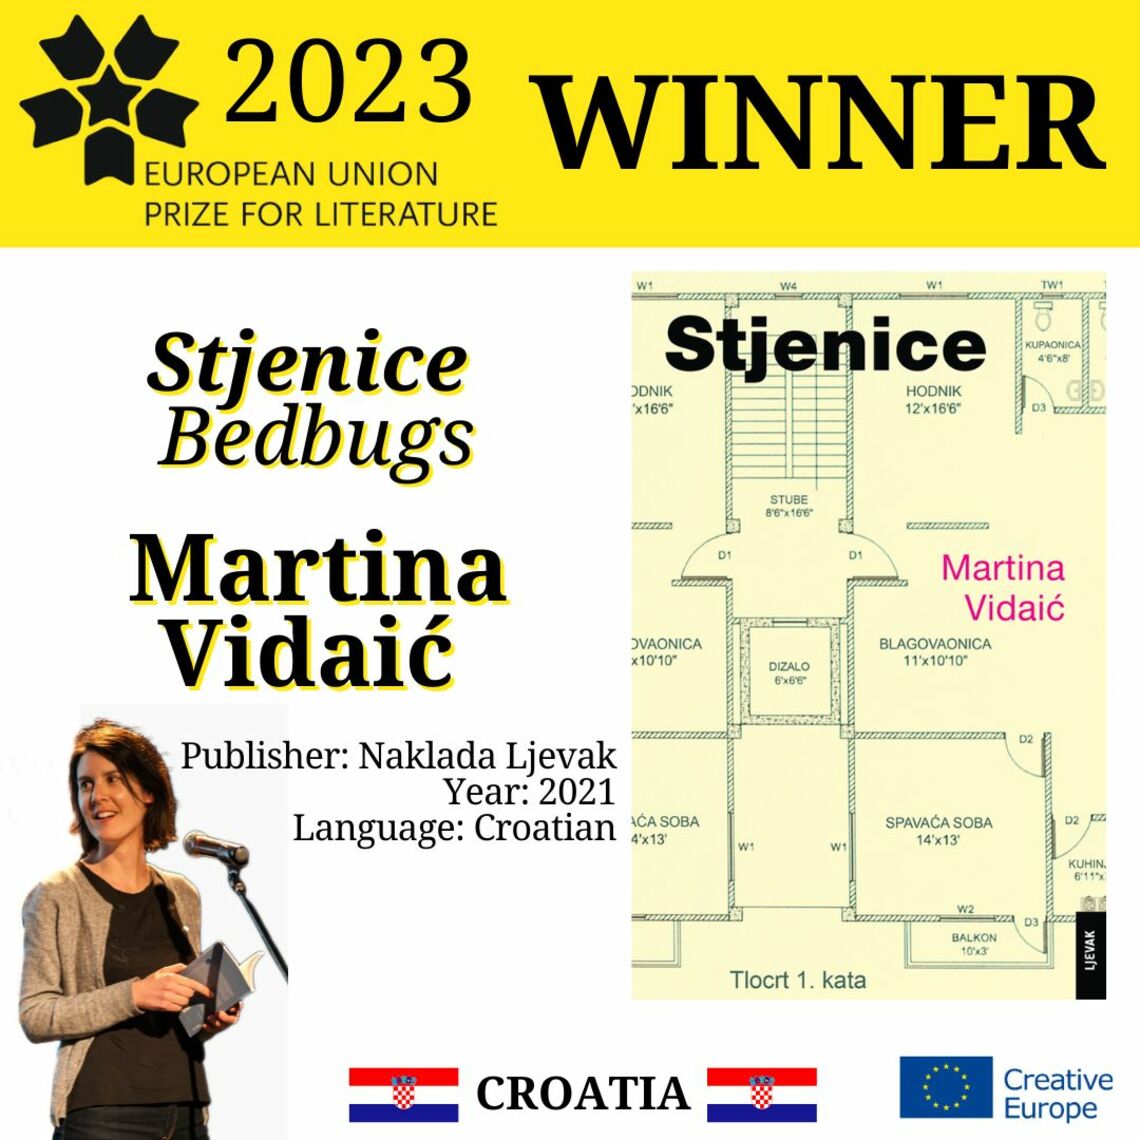 Proglašena dobitnica Nagrade Europske unije za književnost – EUPL 2023